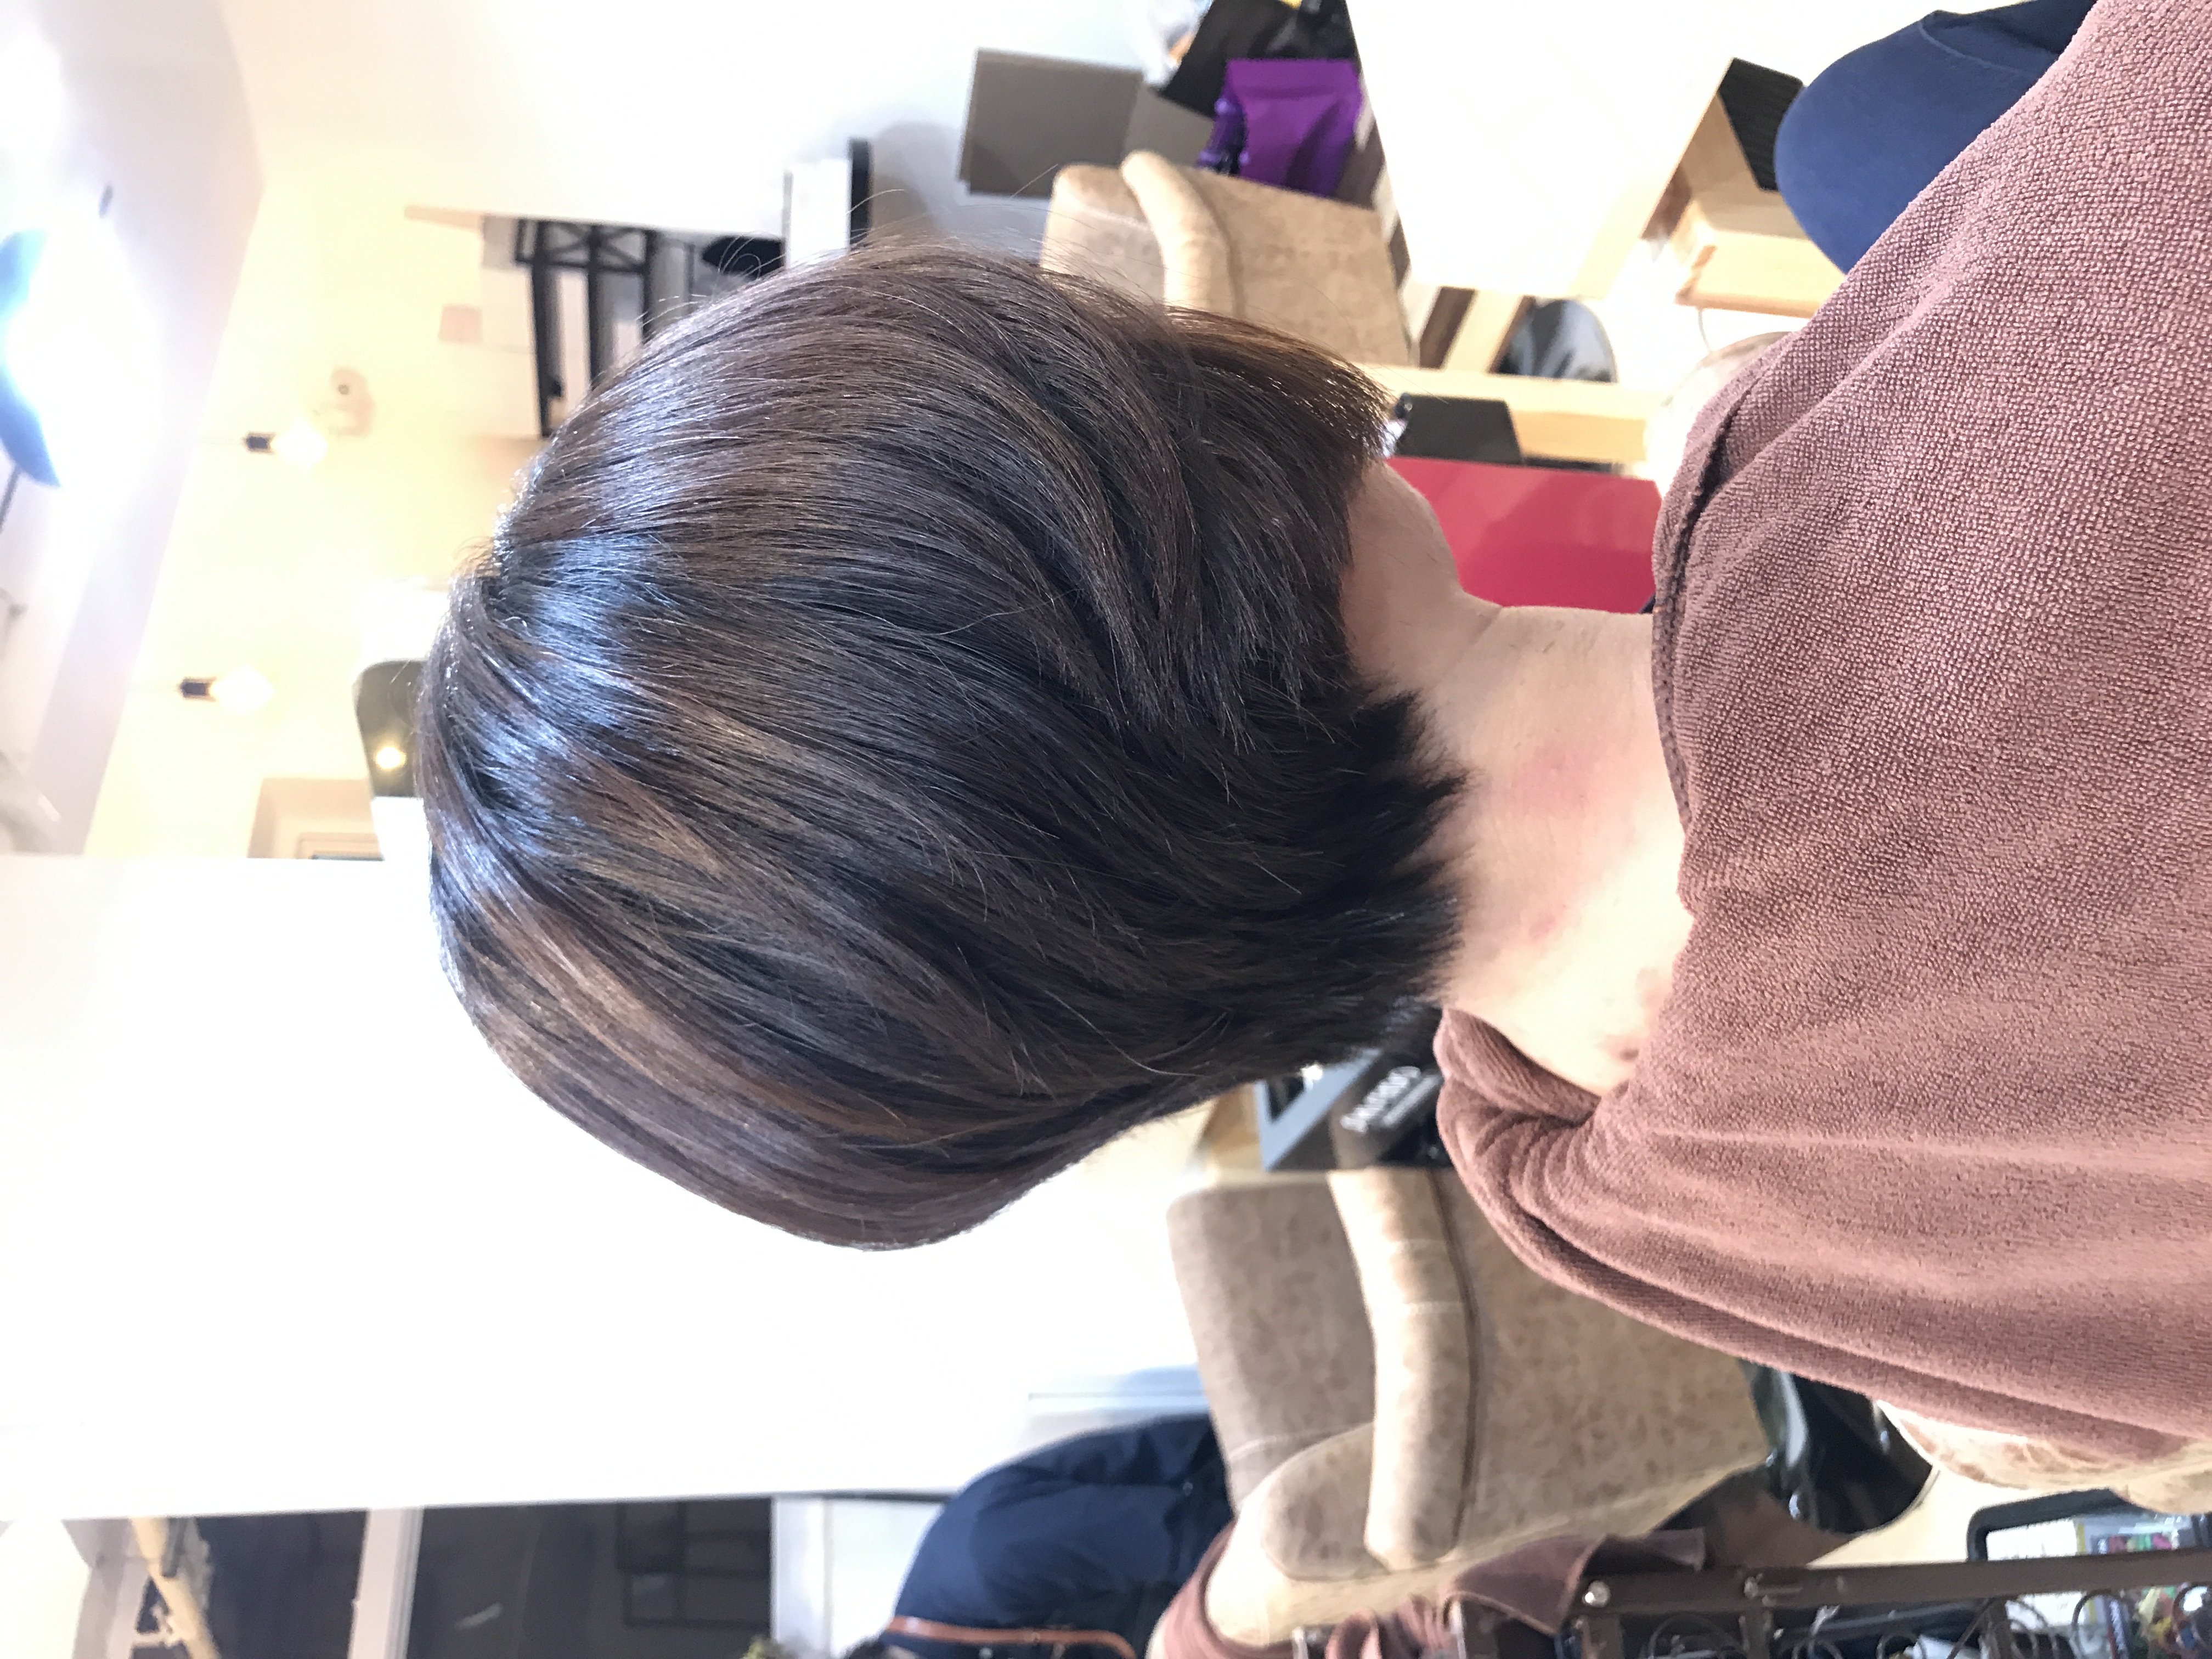 髮型作品參考:日系剪裁二分區(☝︎ ՞ਊ ՞)☝︎